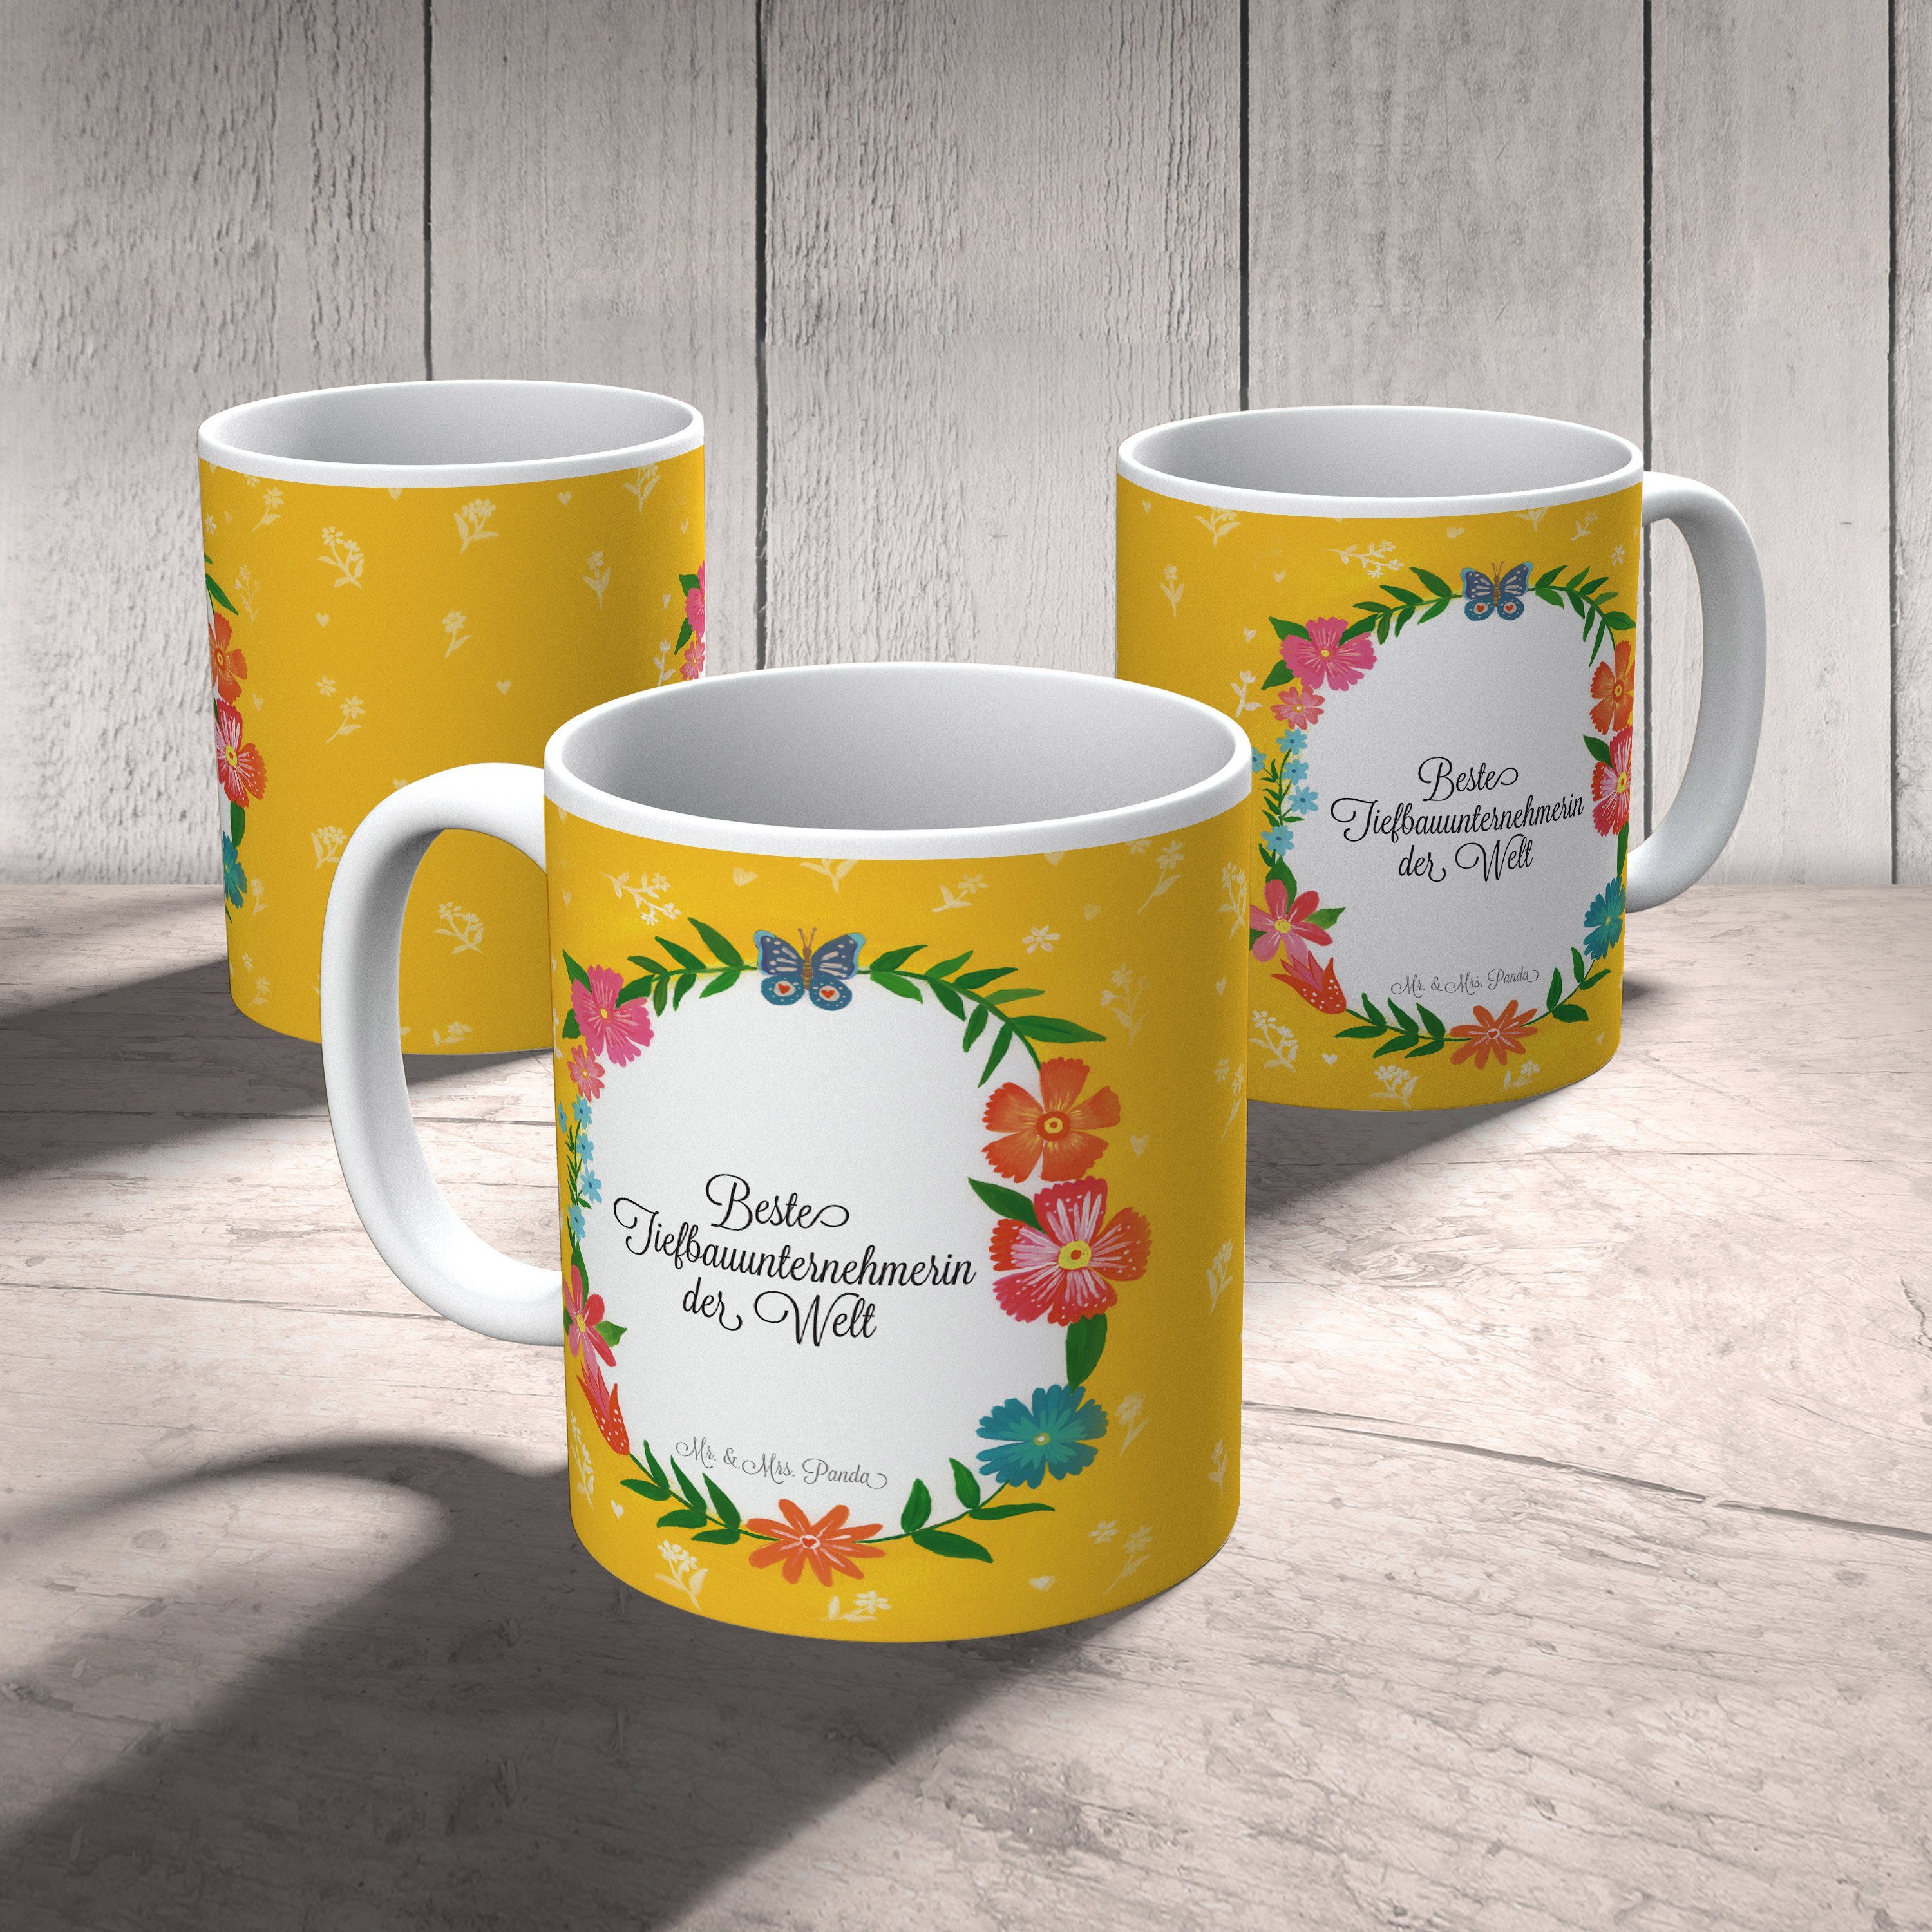 Mr. & Mrs. Panda Tasse Geschenk, Kaffeebecher, Tasse, Keramik Schenken, - Tiefbauunternehmerin Rente